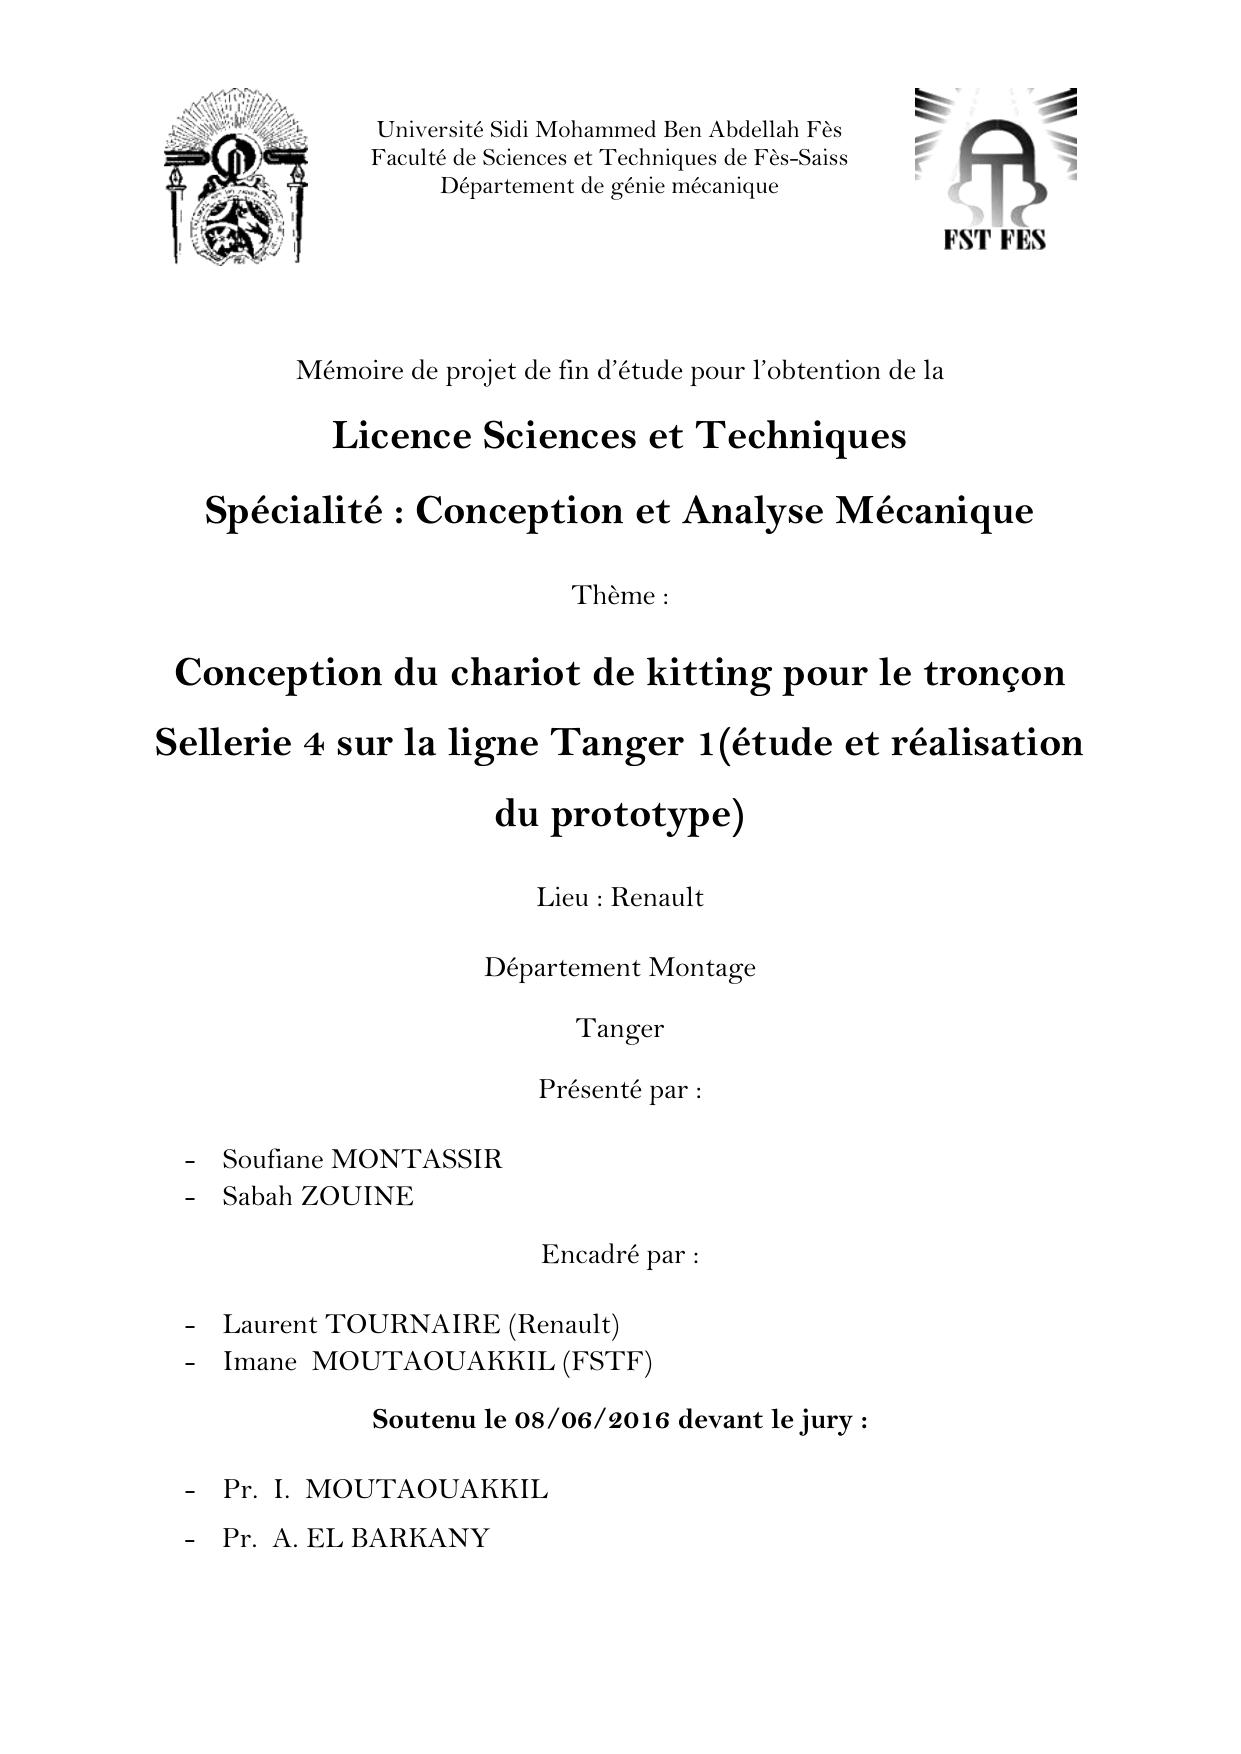 Conception du chariot de kitting pour le tronçon Sellerie 4 sur la ligne Tanger 1(étude et réalisation du prototype)